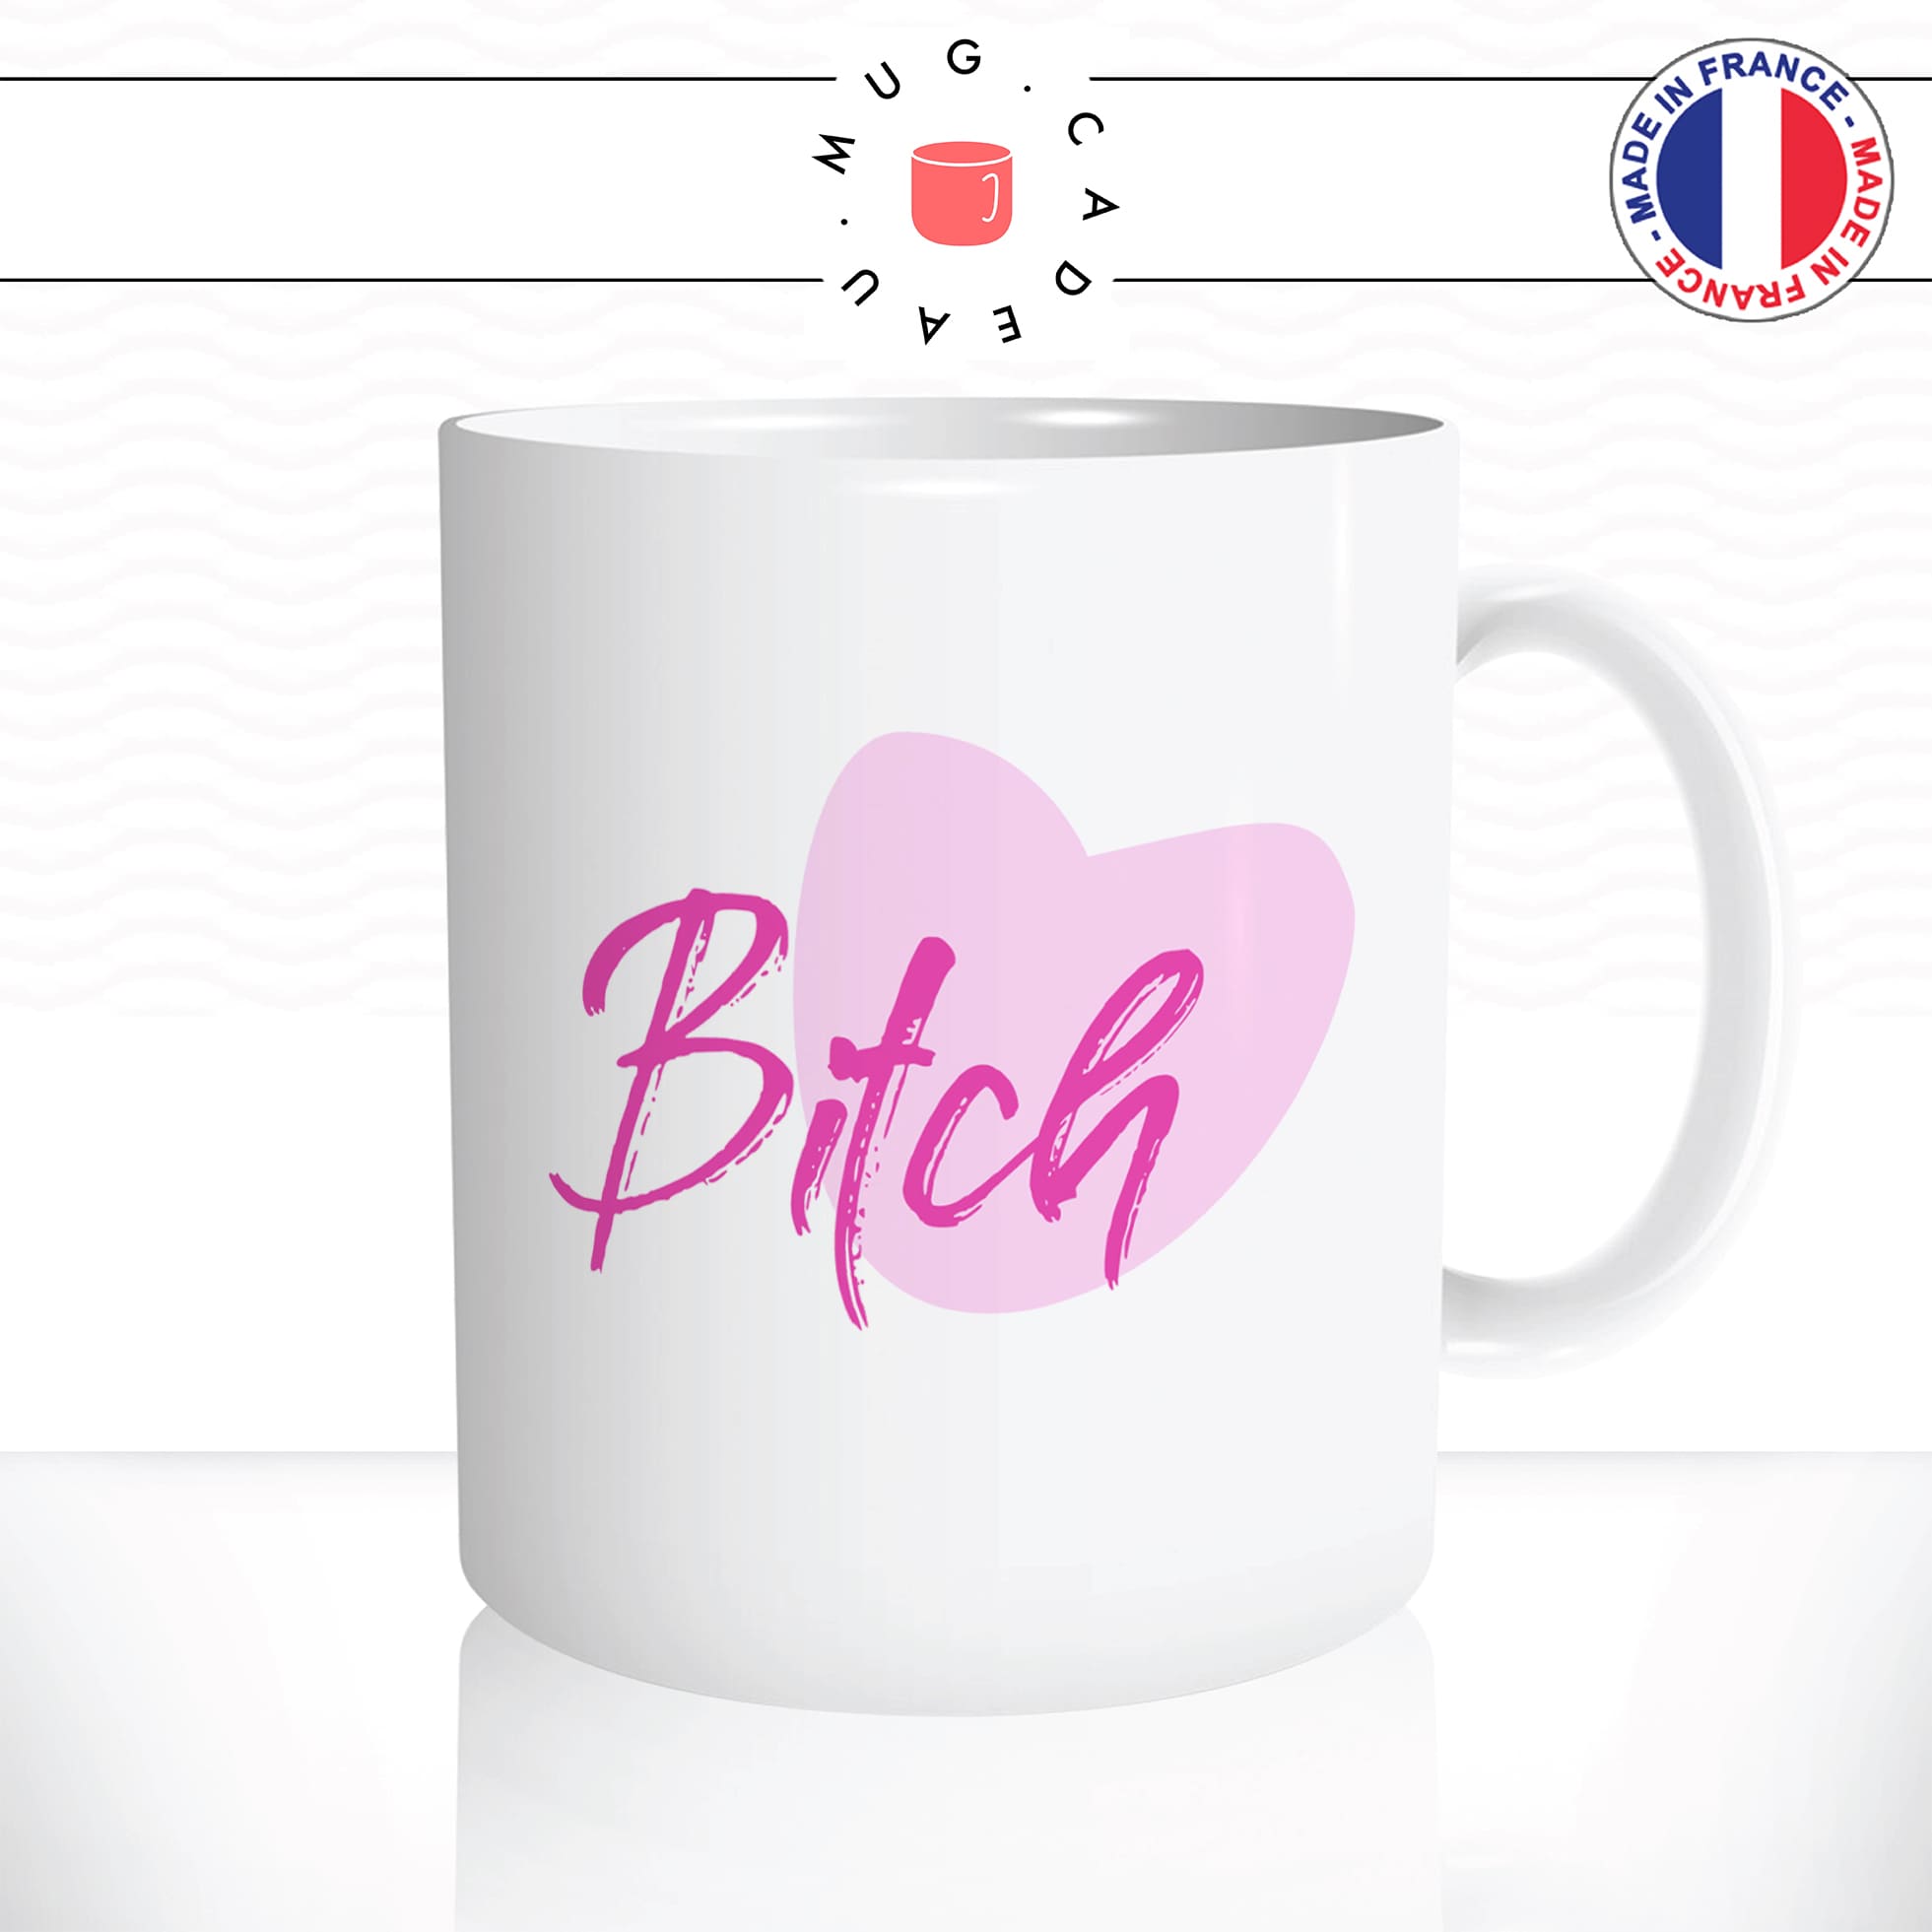 mug-tasse-blanc-unique-bitch-pétasse-copine-coeur-rose-mignon-homme-femme-parodie-humour-fun-cool-idée-cadeau-original-personnalisé2